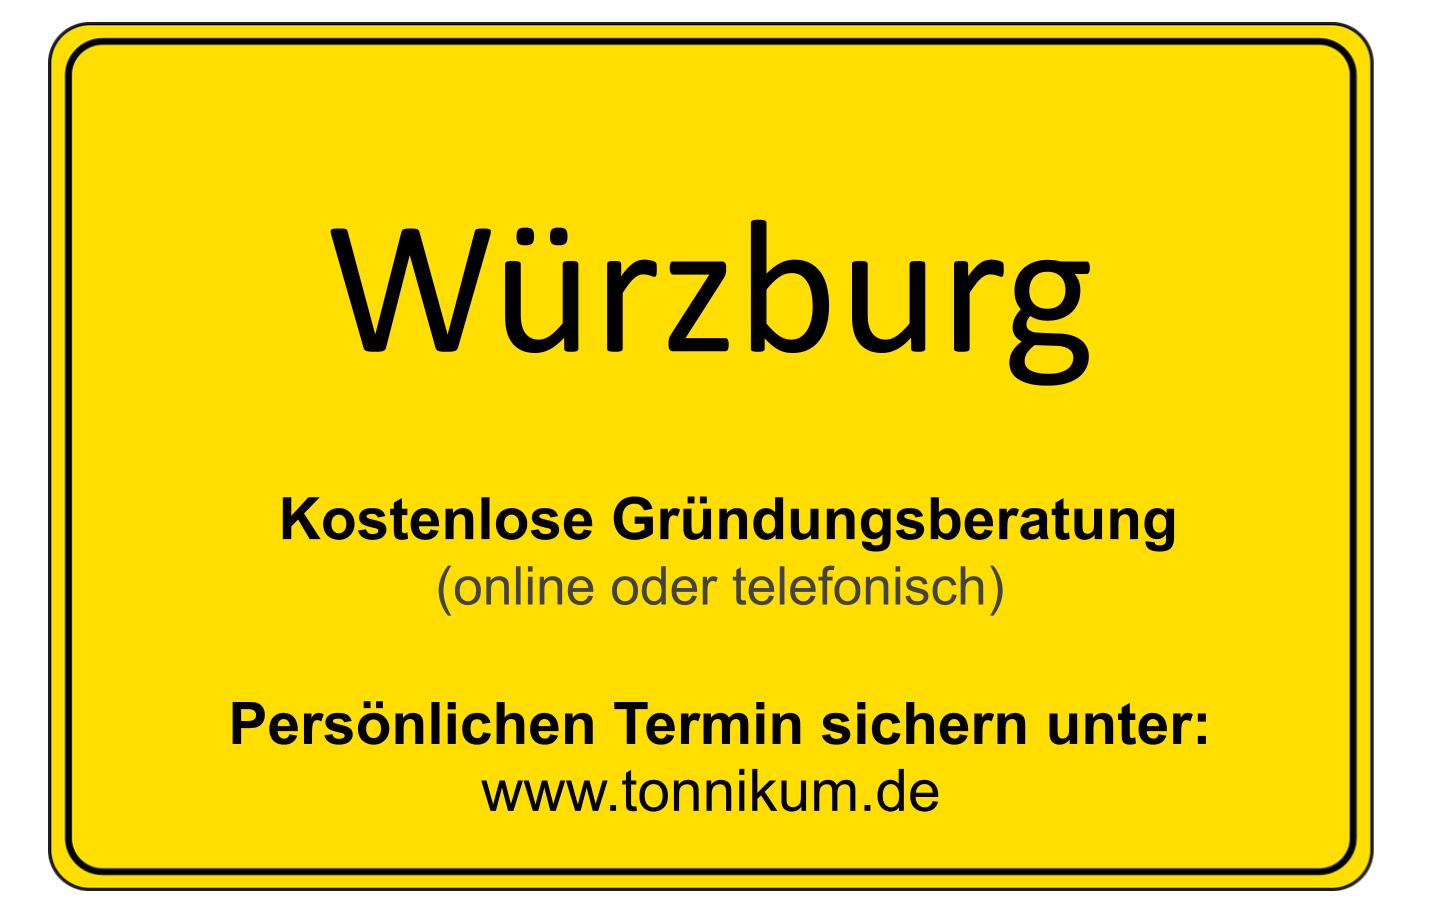 Würzburg Beratung Existenzgründung  ⇒ kostenloses Erstgespräch